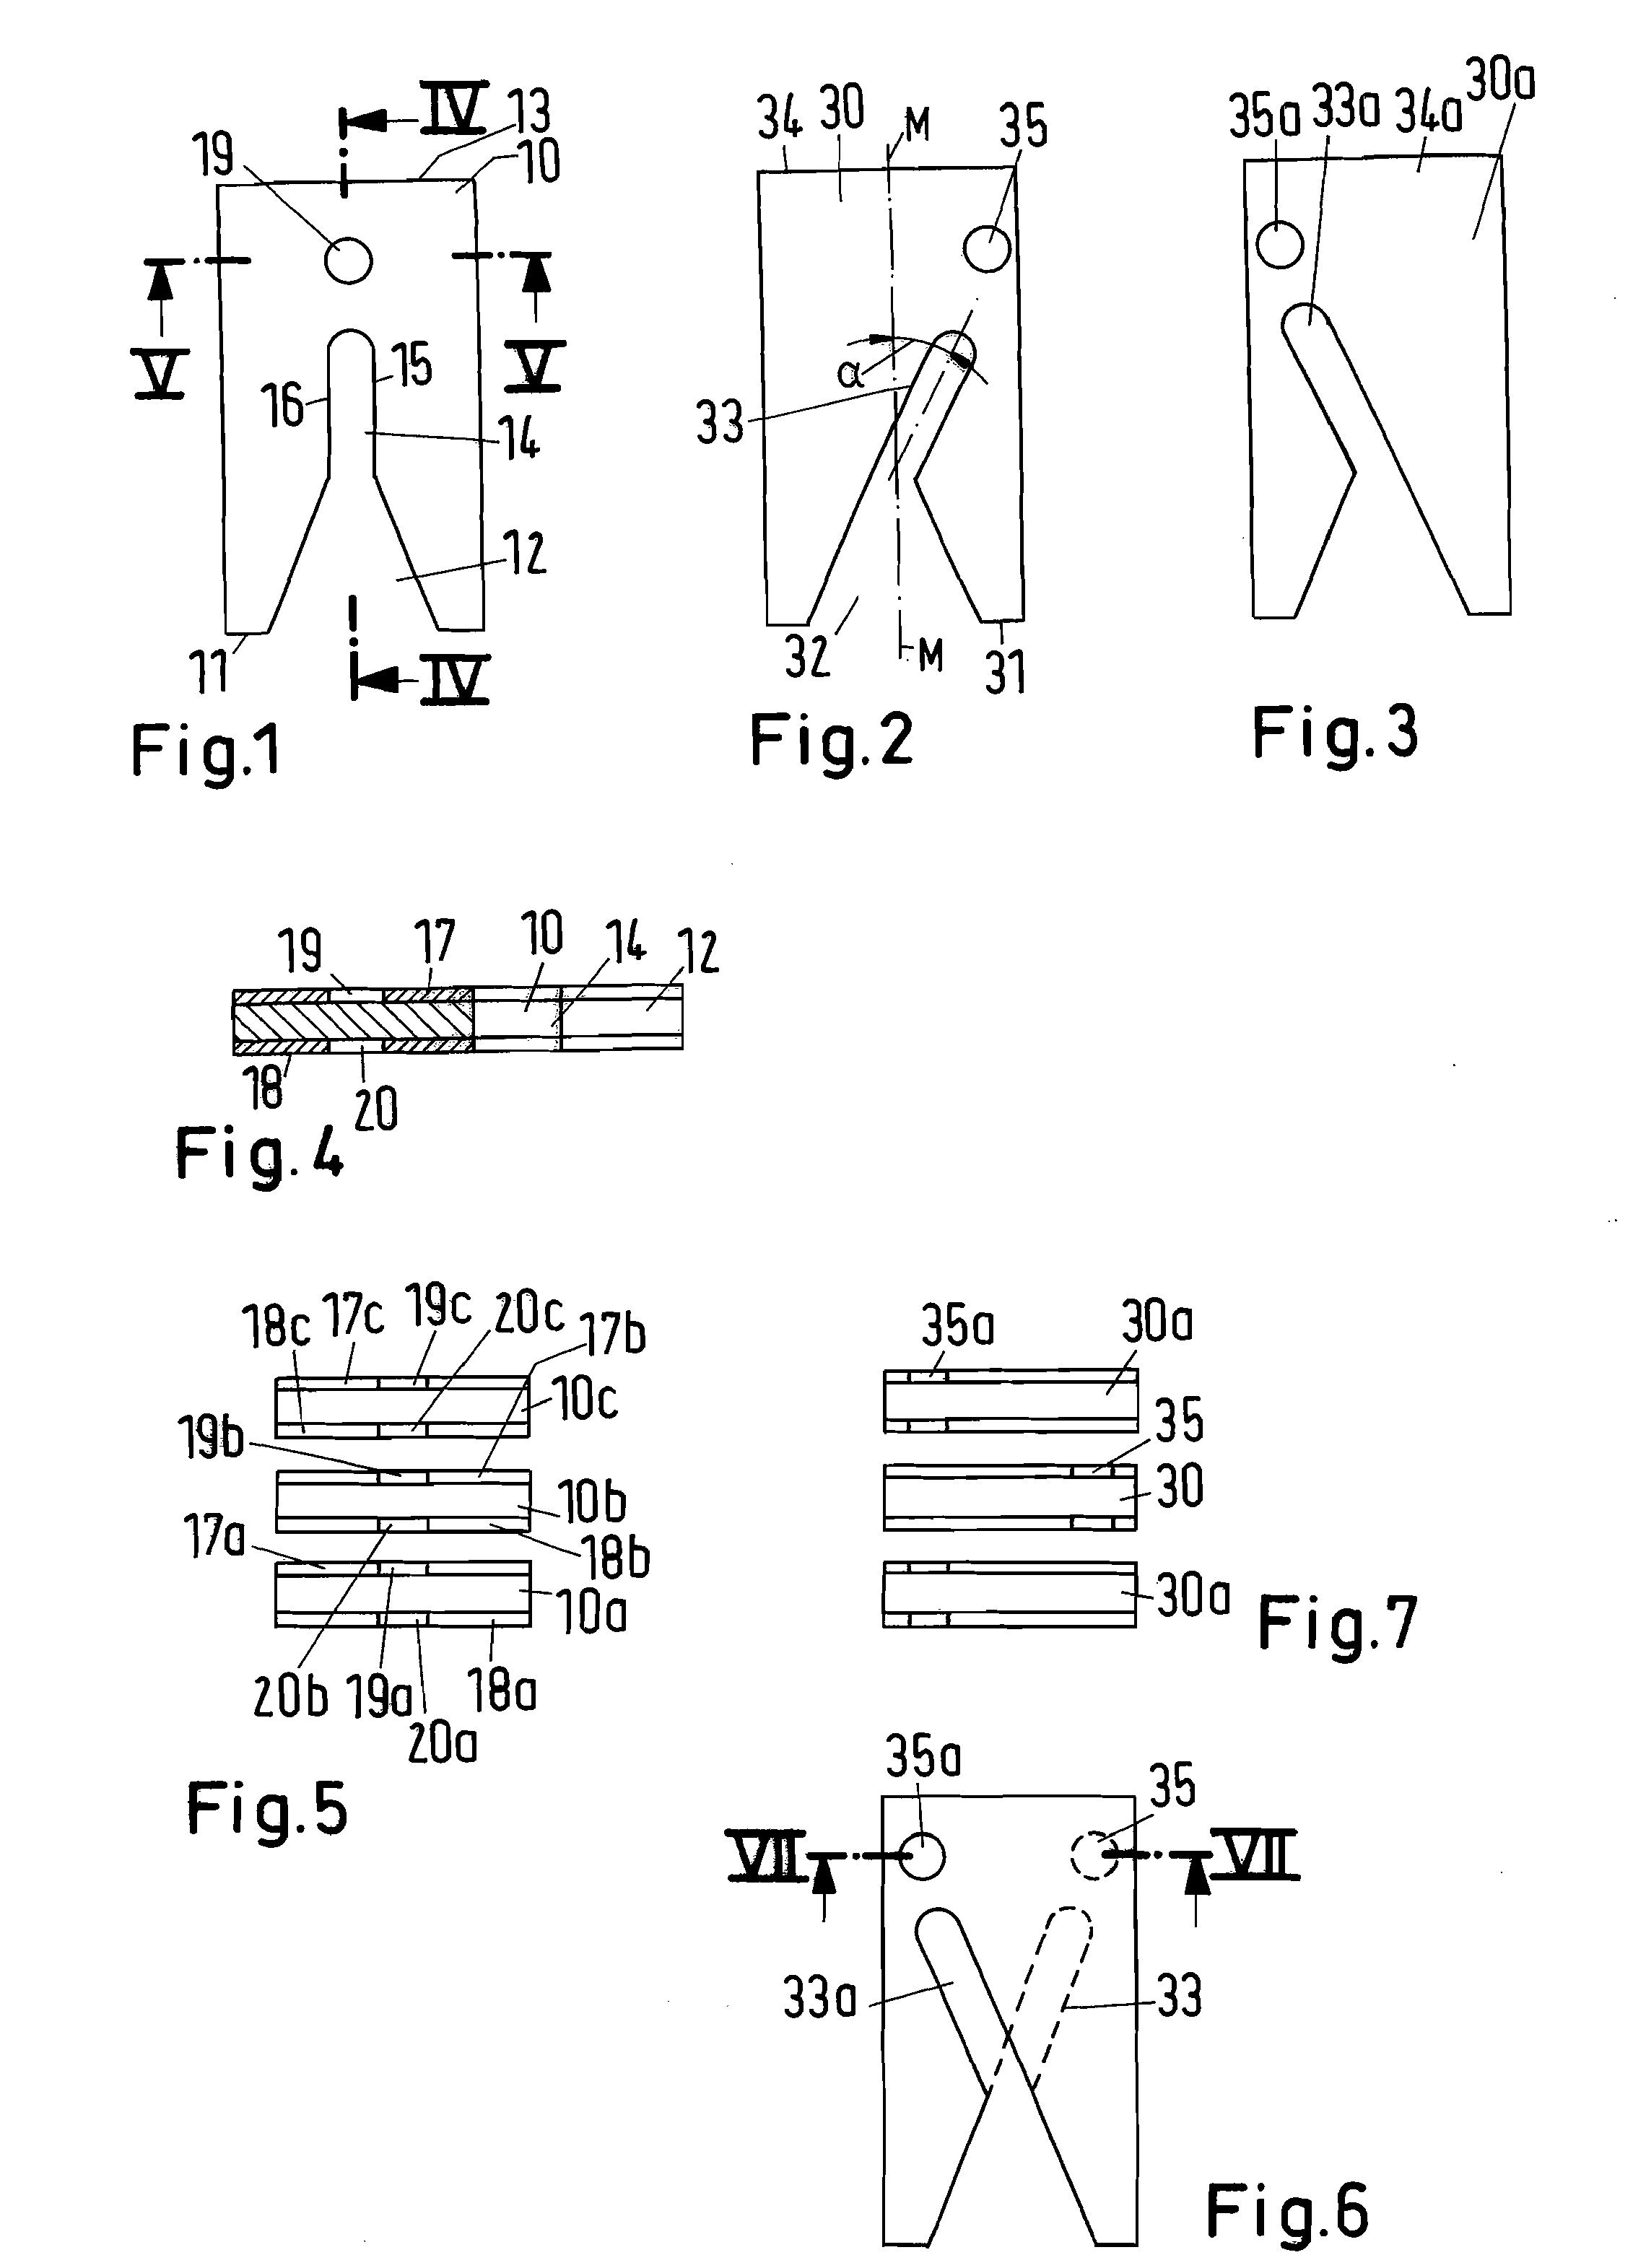 Arc splitter arrangement for an electrical switch